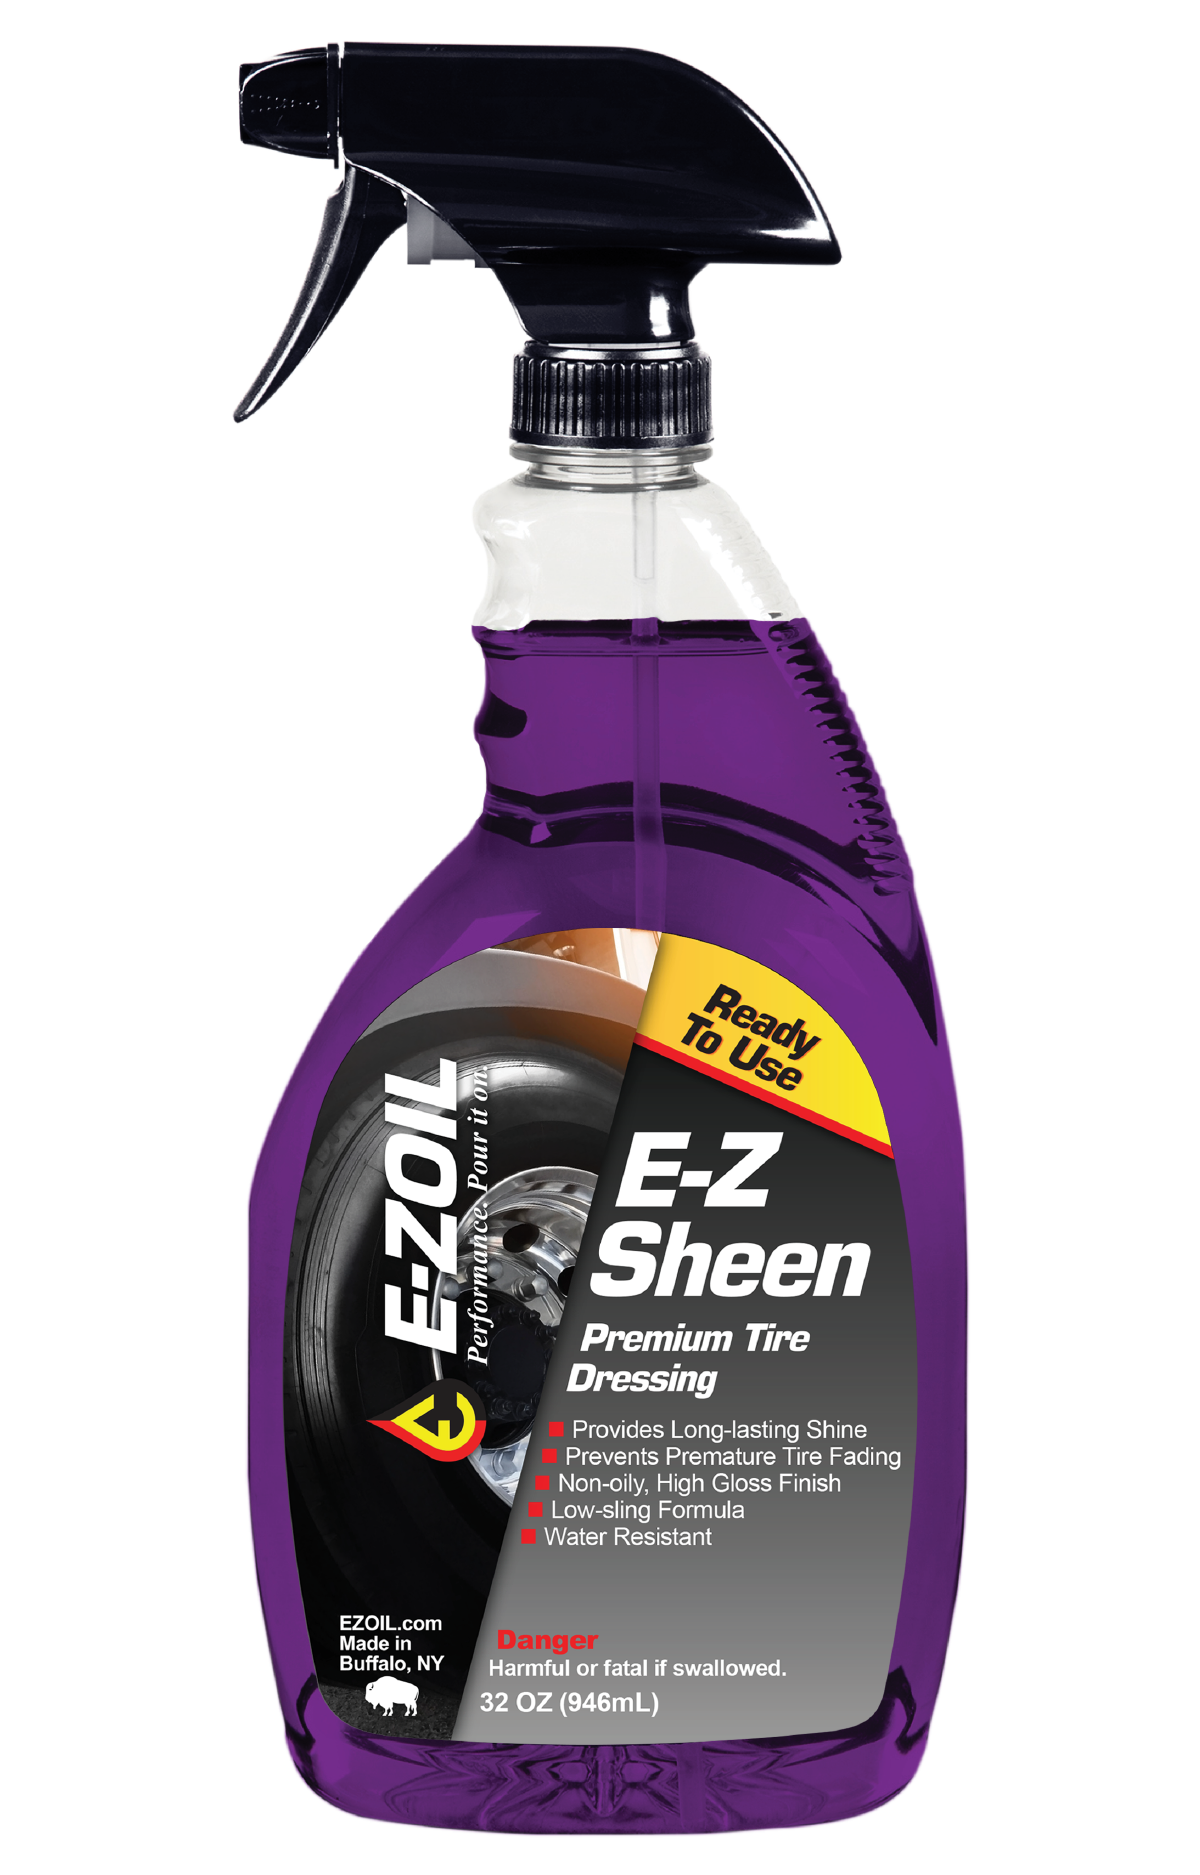 E-Z Sheen 32 FL OZ